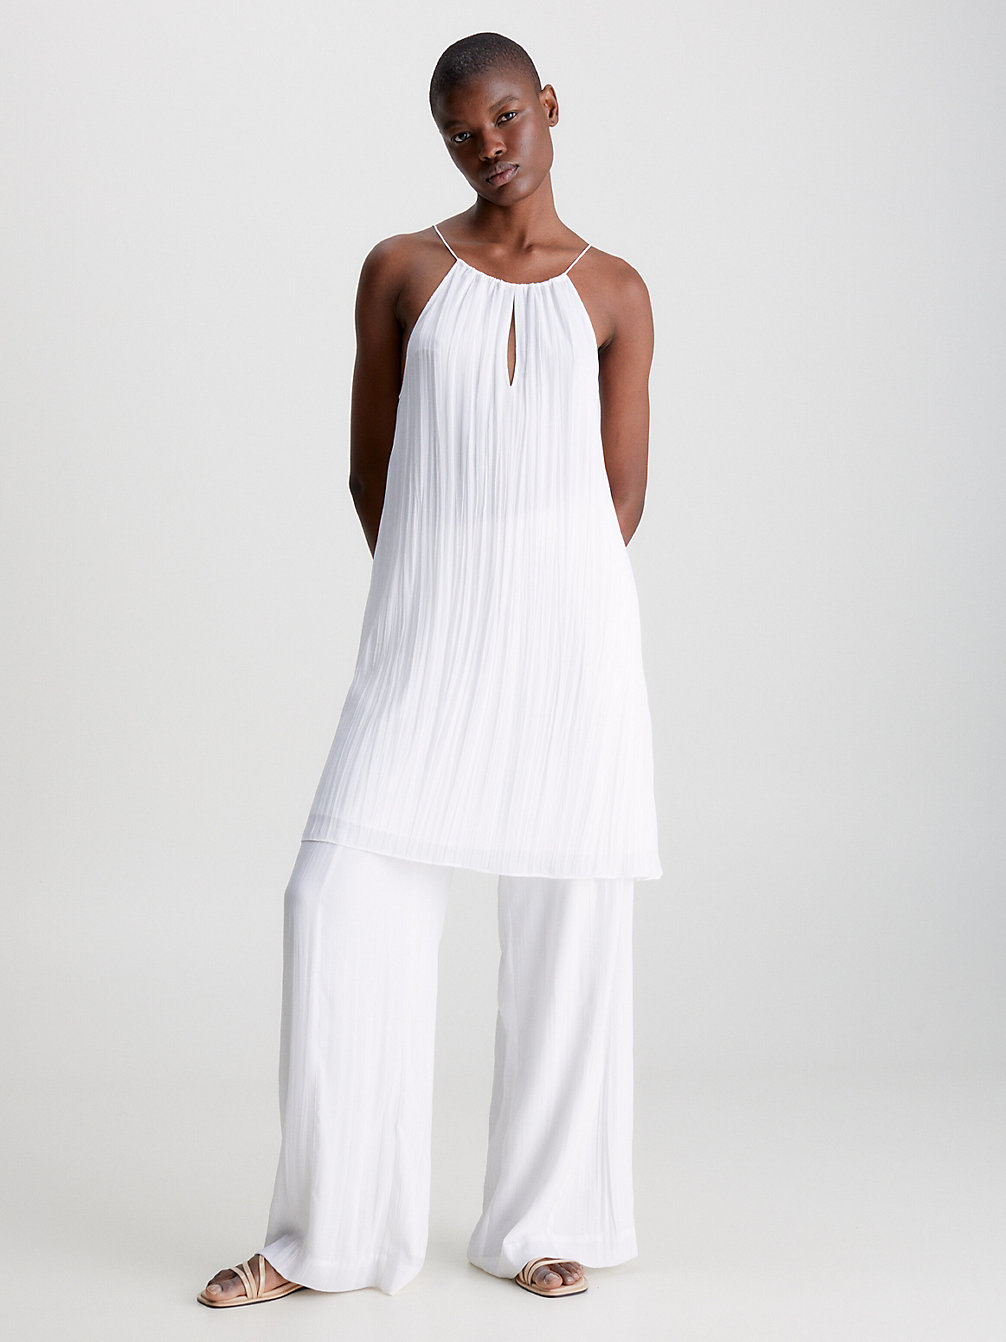 BRIGHT WHITE Crinkle Crepe Mini Slip Dress undefined women Calvin Klein